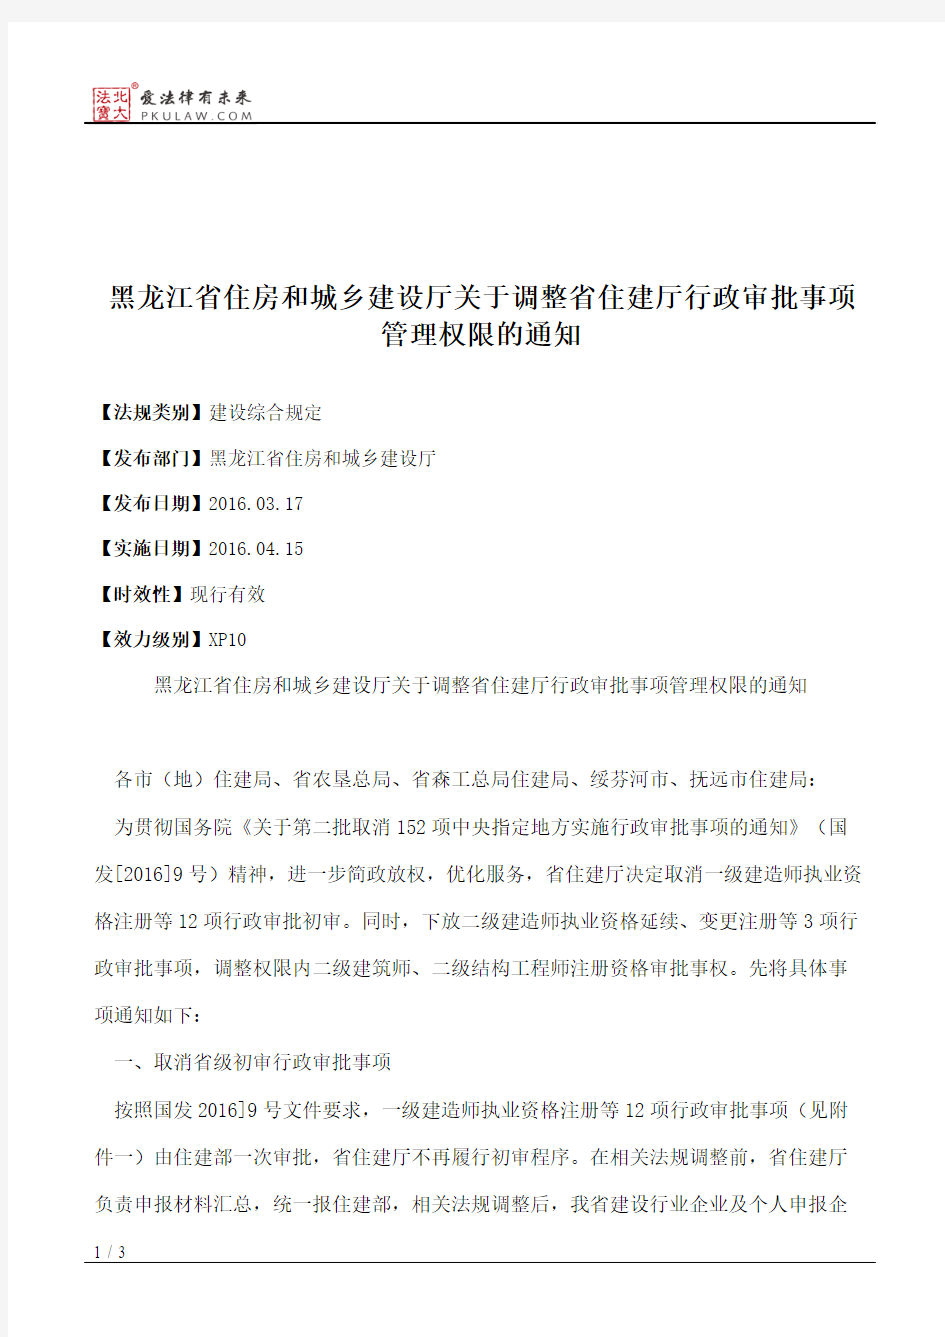 黑龙江省住房和城乡建设厅关于调整省住建厅行政审批事项管理权限的通知